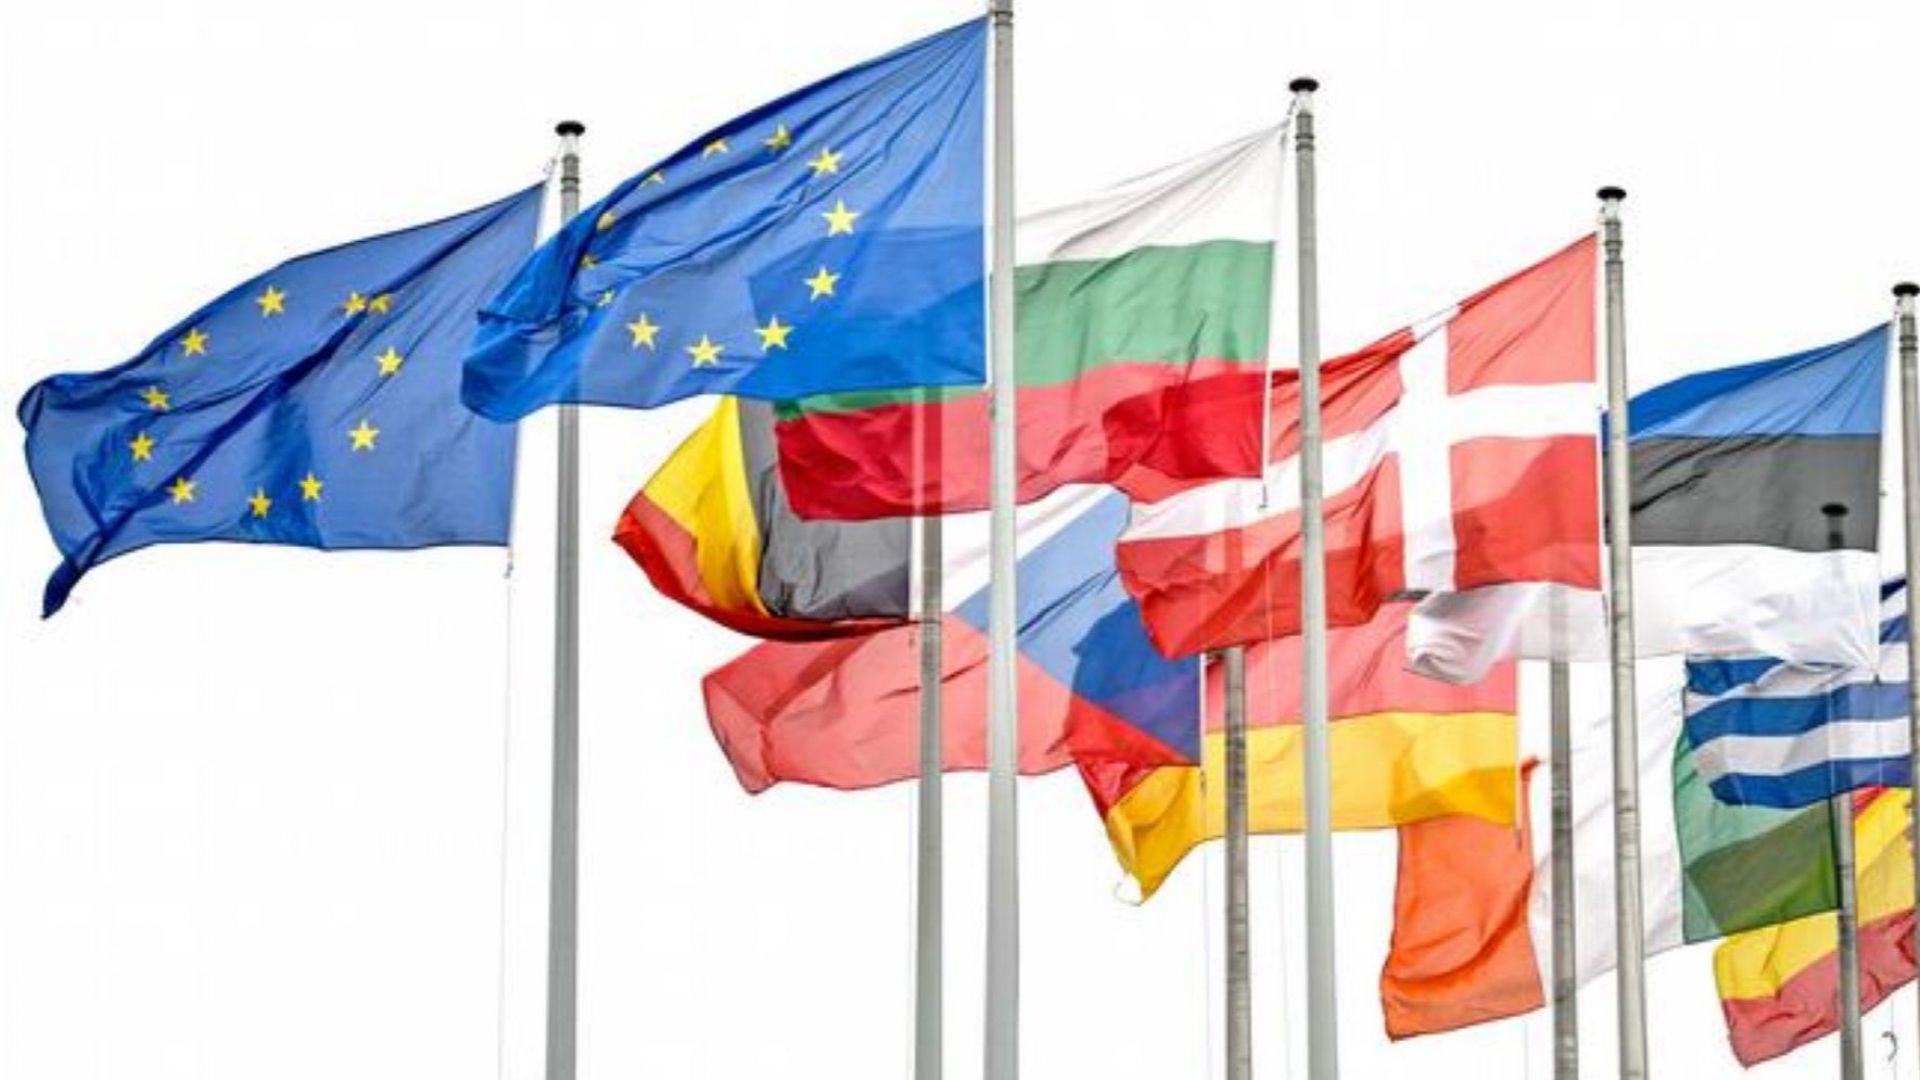 Проучване на ЕК: България е сред страните с най-голямо доверие в ЕС